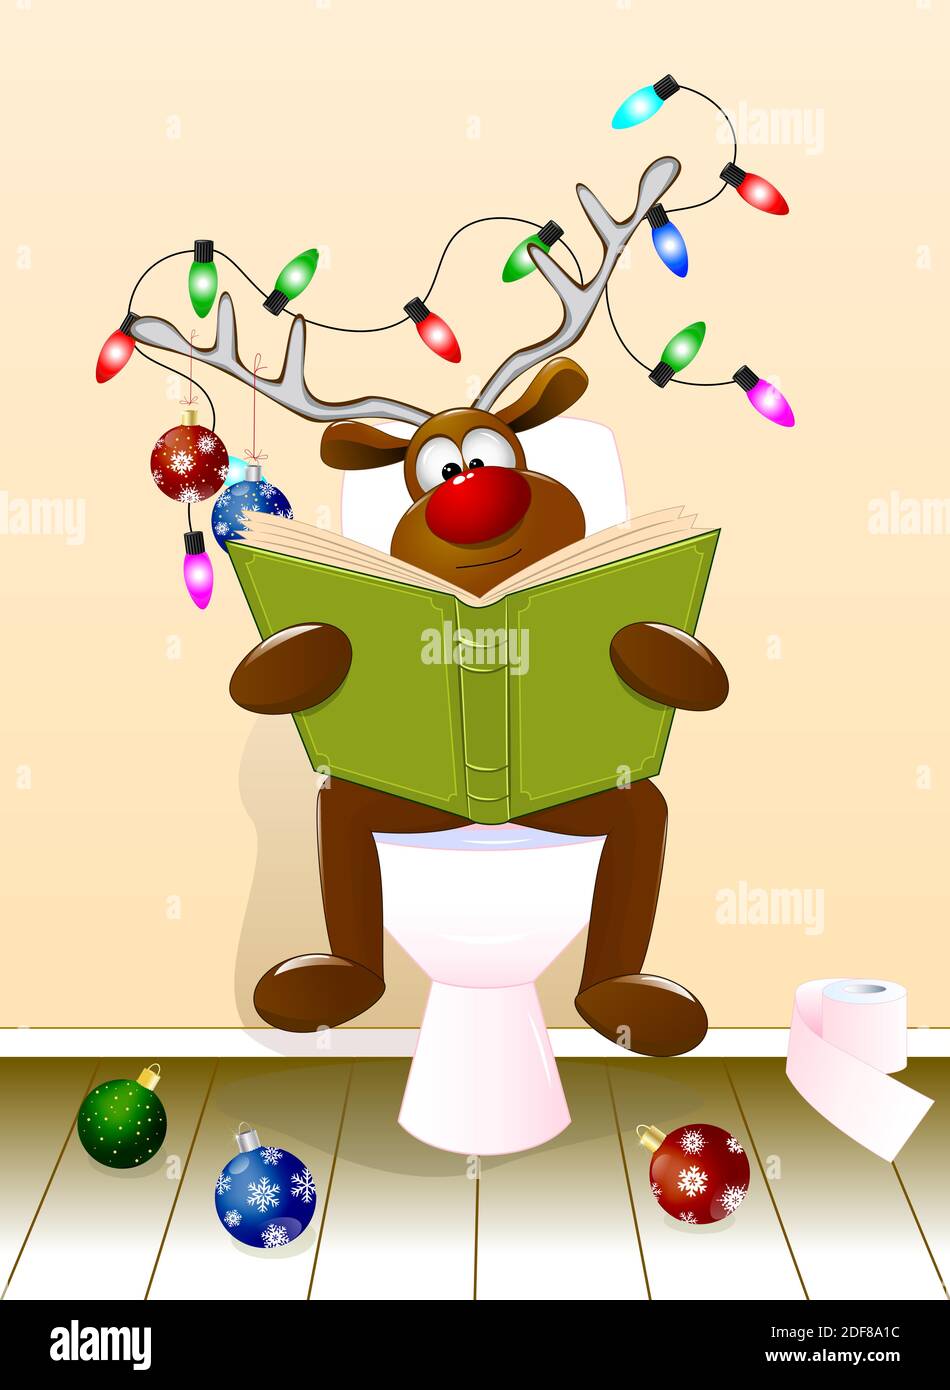 Un cerf de bande dessinée lisant un livre assis sur un bol de toilettes. Les bois sont décorés de boules de Noël et d'une guirlande lumineuse. Noël. Illustration de Vecteur